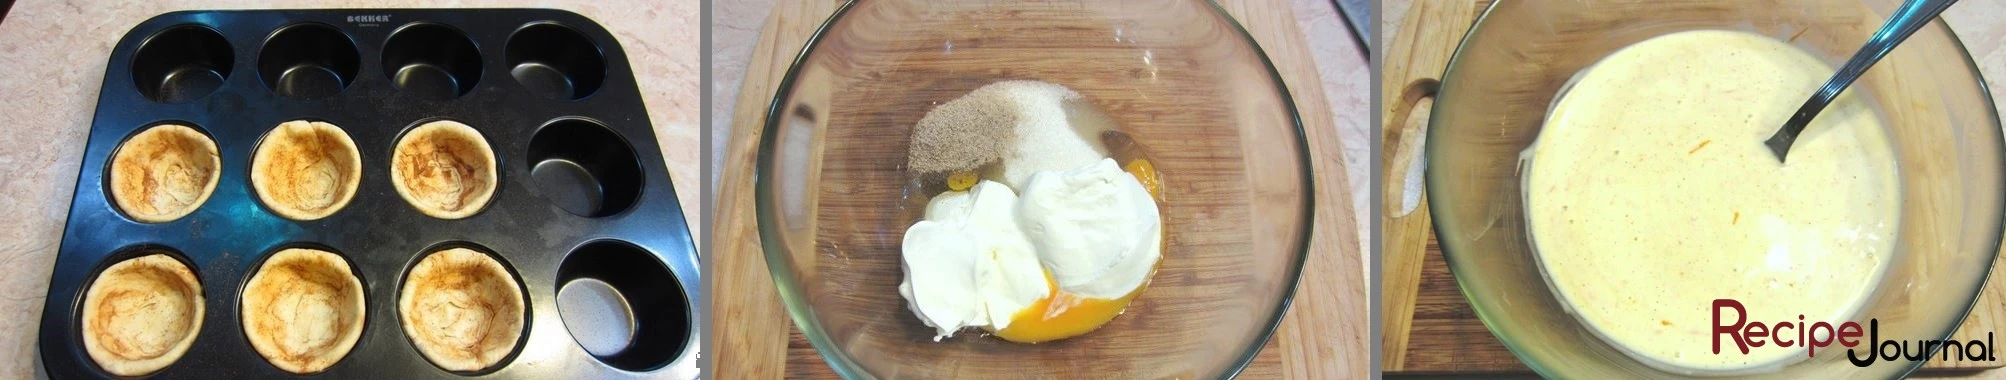 Форму для кексов смазываем небольшим количеством масла и выкладываем пласты теста, вдавливая в формы и равномерно распределяя по стенкам. Отправляем в разогретую до 200<sup>о </sup>духовку на 15 минут. Ингредиенты для крема яйцо, сметану, сахар и ванильный сироп складываем  подходящую емкость хорошенько взбиваем и отставляем.